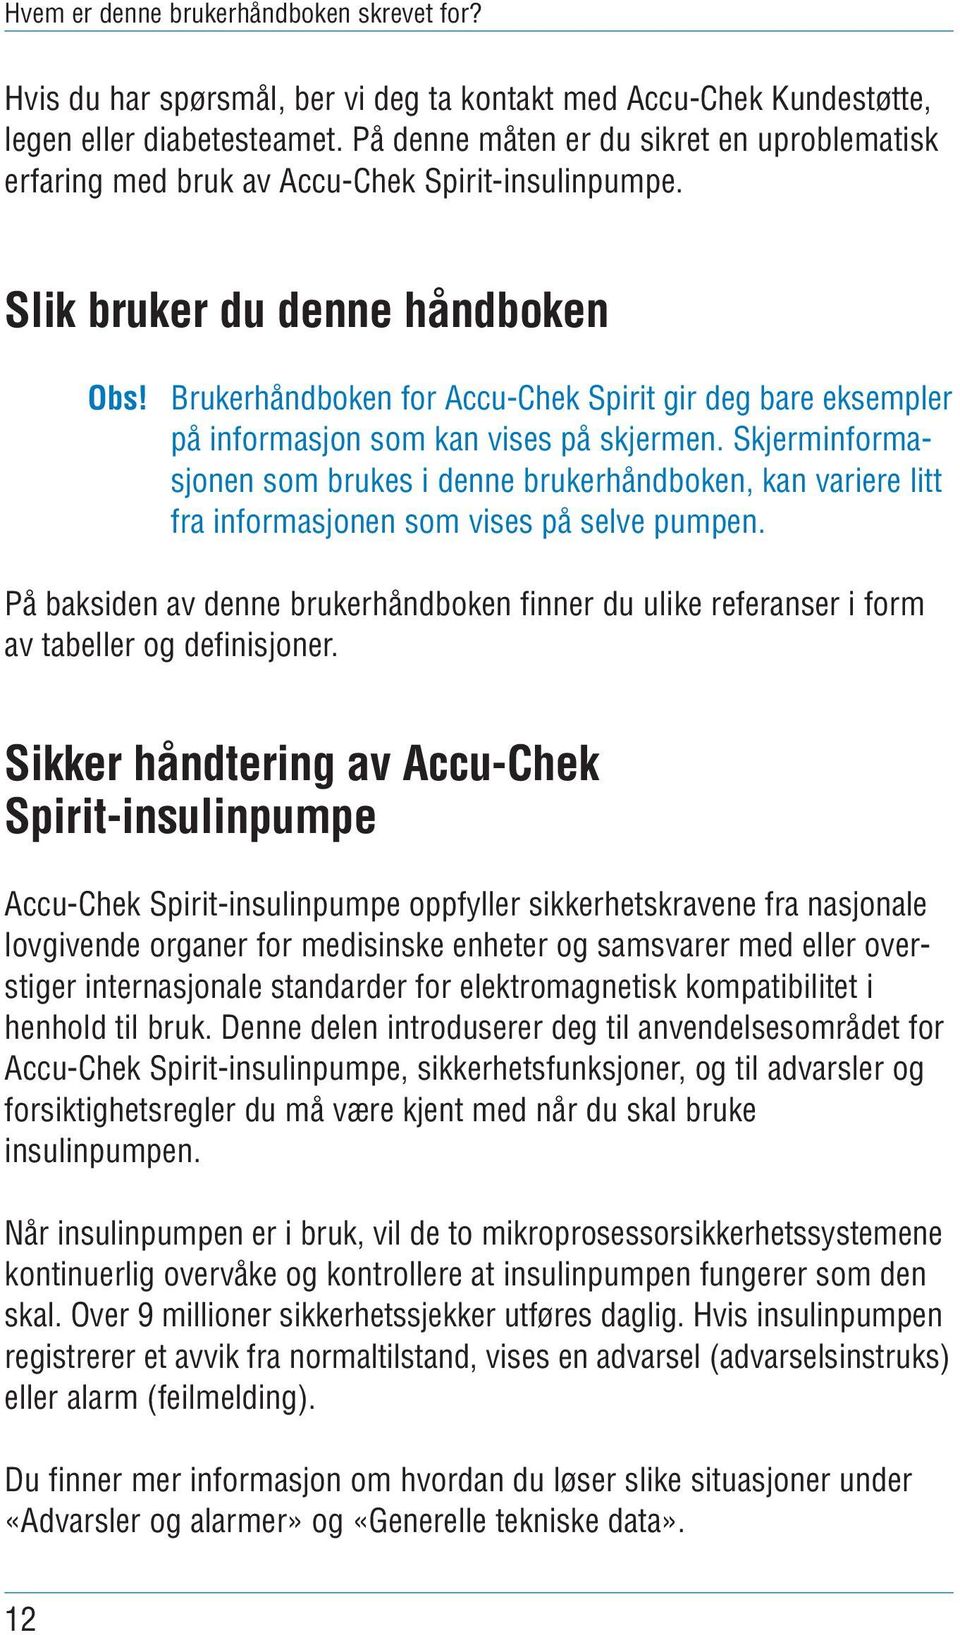 Brukerhåndboken for Accu-Chek Spirit gir deg bare eksempler på informasjon som kan vises på skjermen.